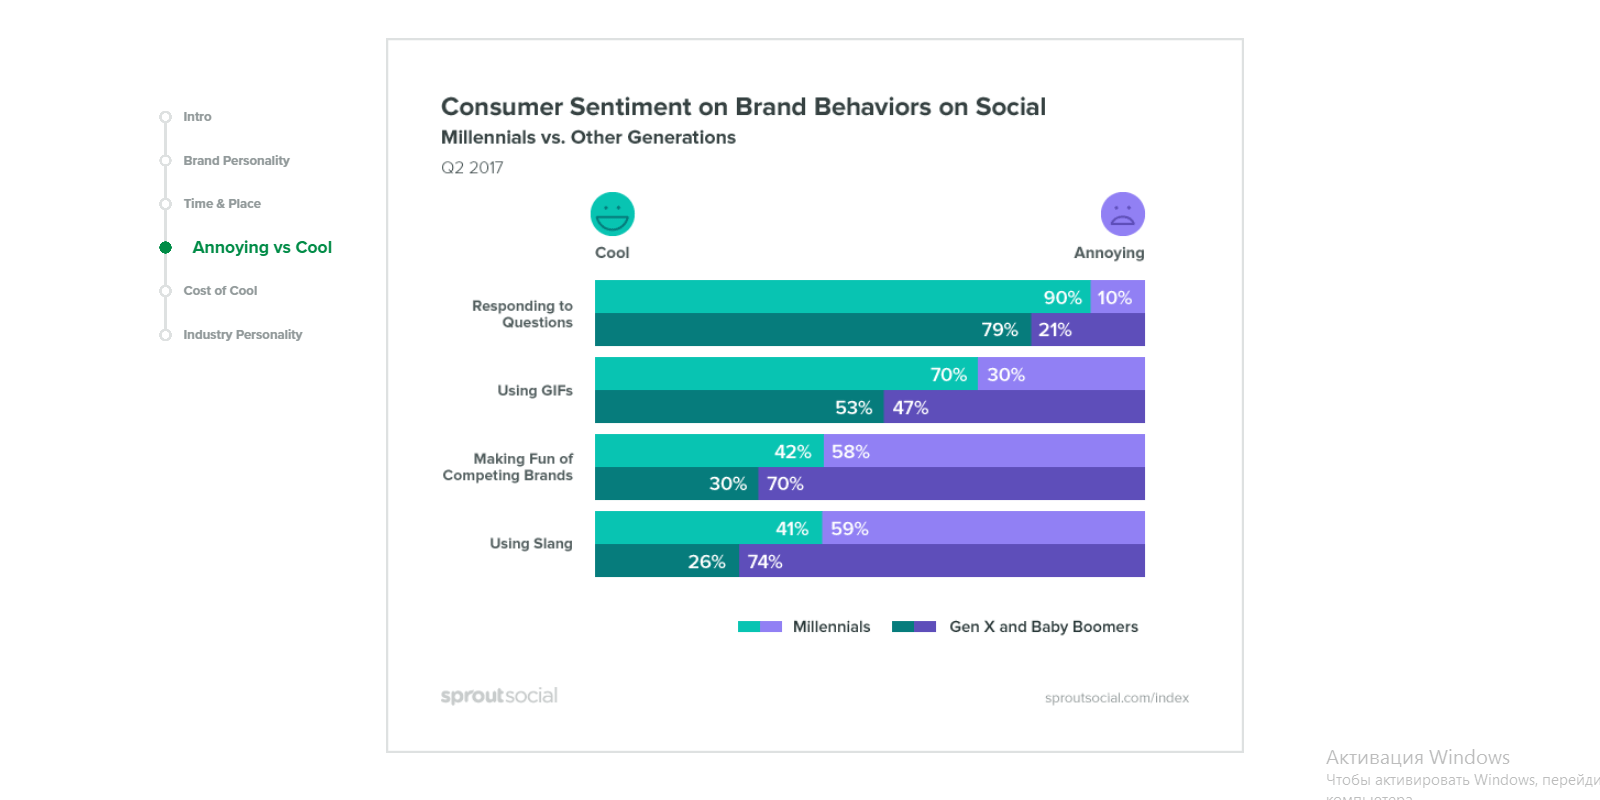 Consumer sentiment on brand behaviors on social media